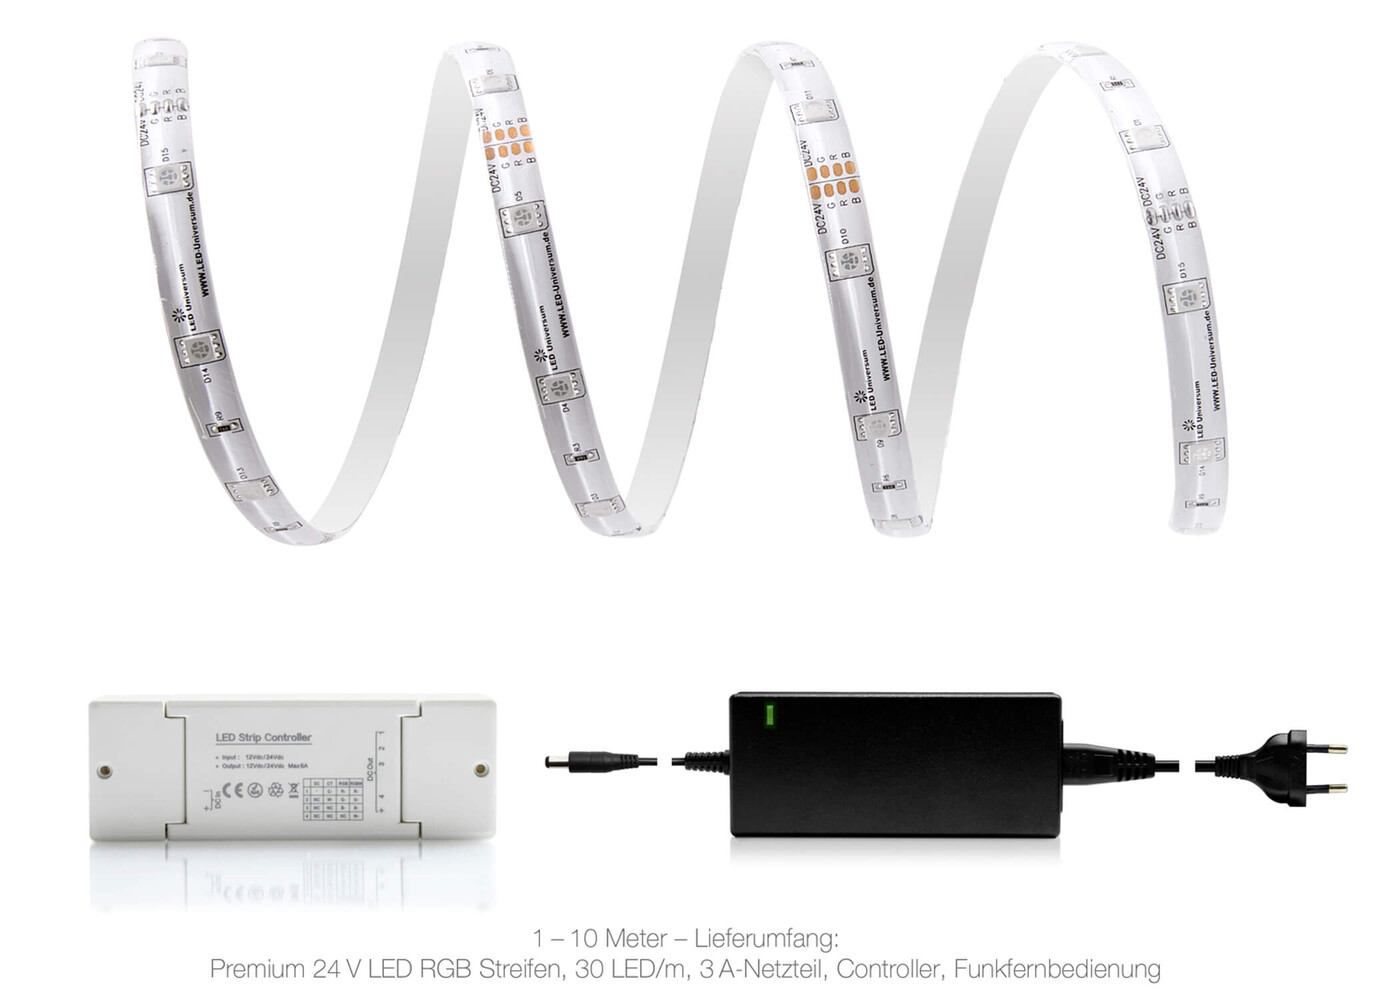 Hochwertiger, bunter und intelligenter LED Streifen von LED Universum für ein smarteres Zuhause